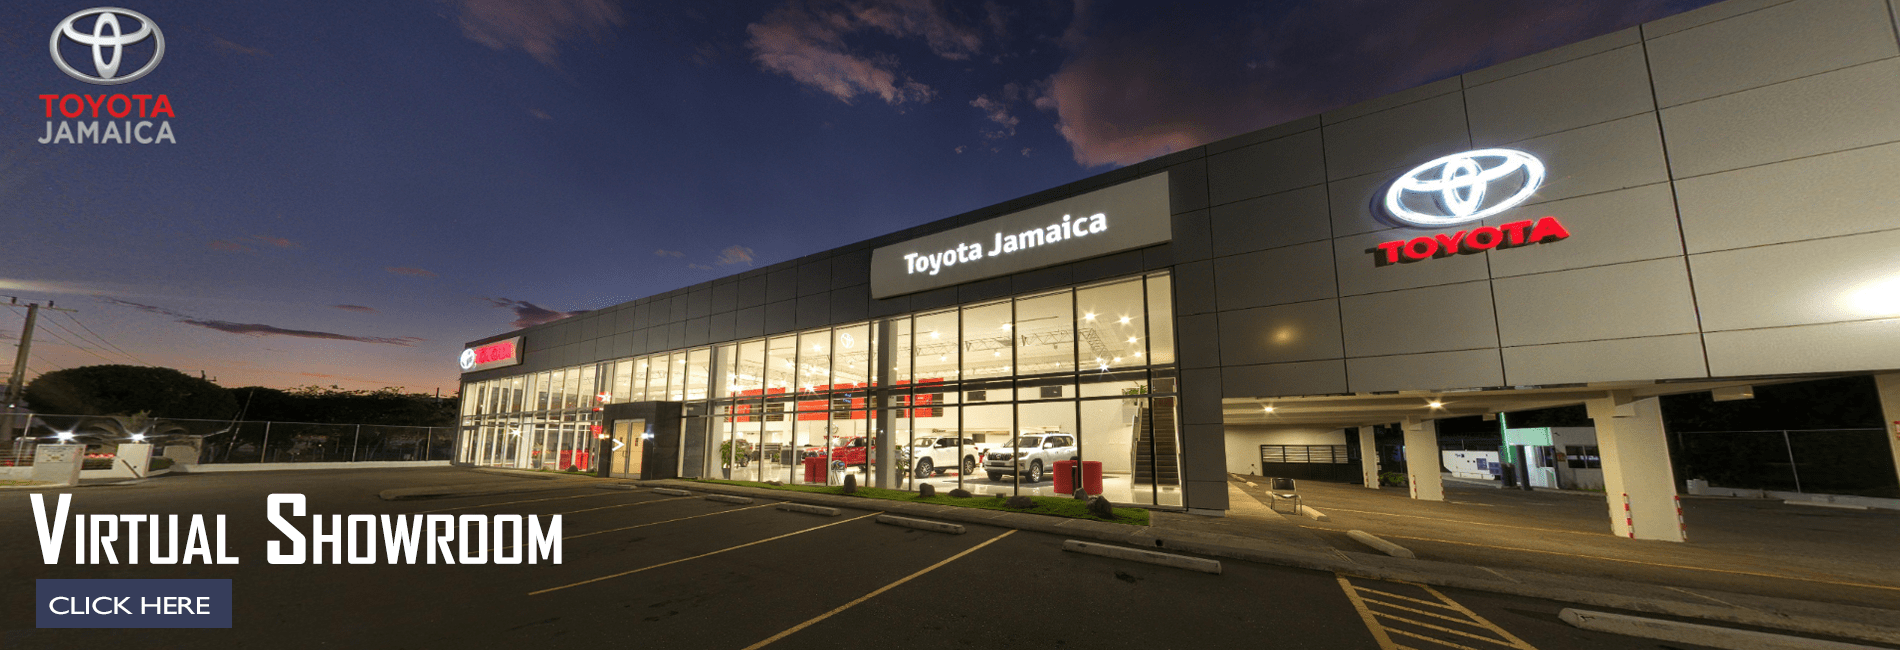 Toyota Jamaica Virtual Showroom